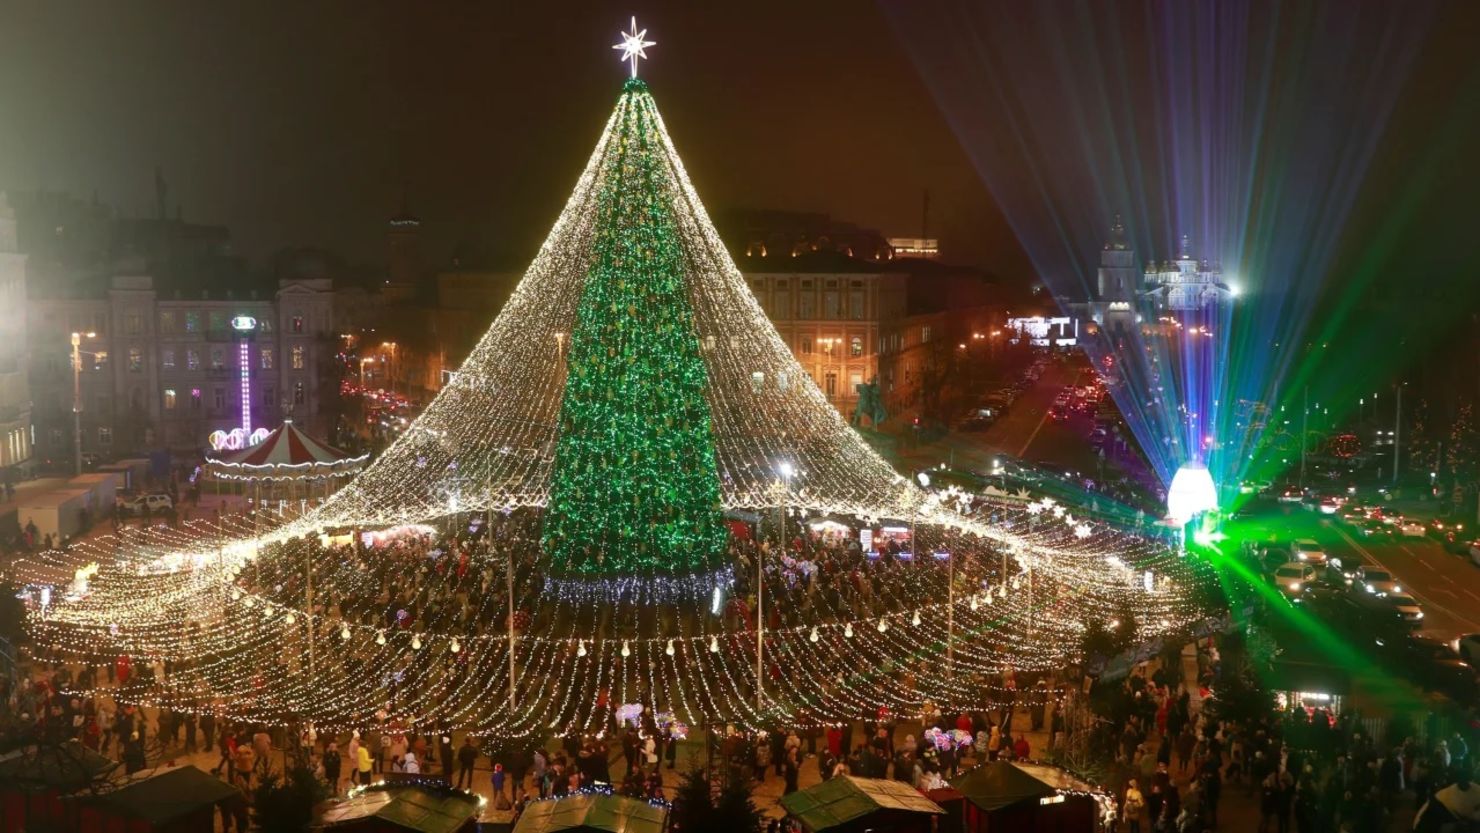 El árbol de Navidad en la plaza Sofiyska en el centro de Kyiv, Ucrania, se ve el 20 de diciembre de 2020 en esta fotografía de archivo.